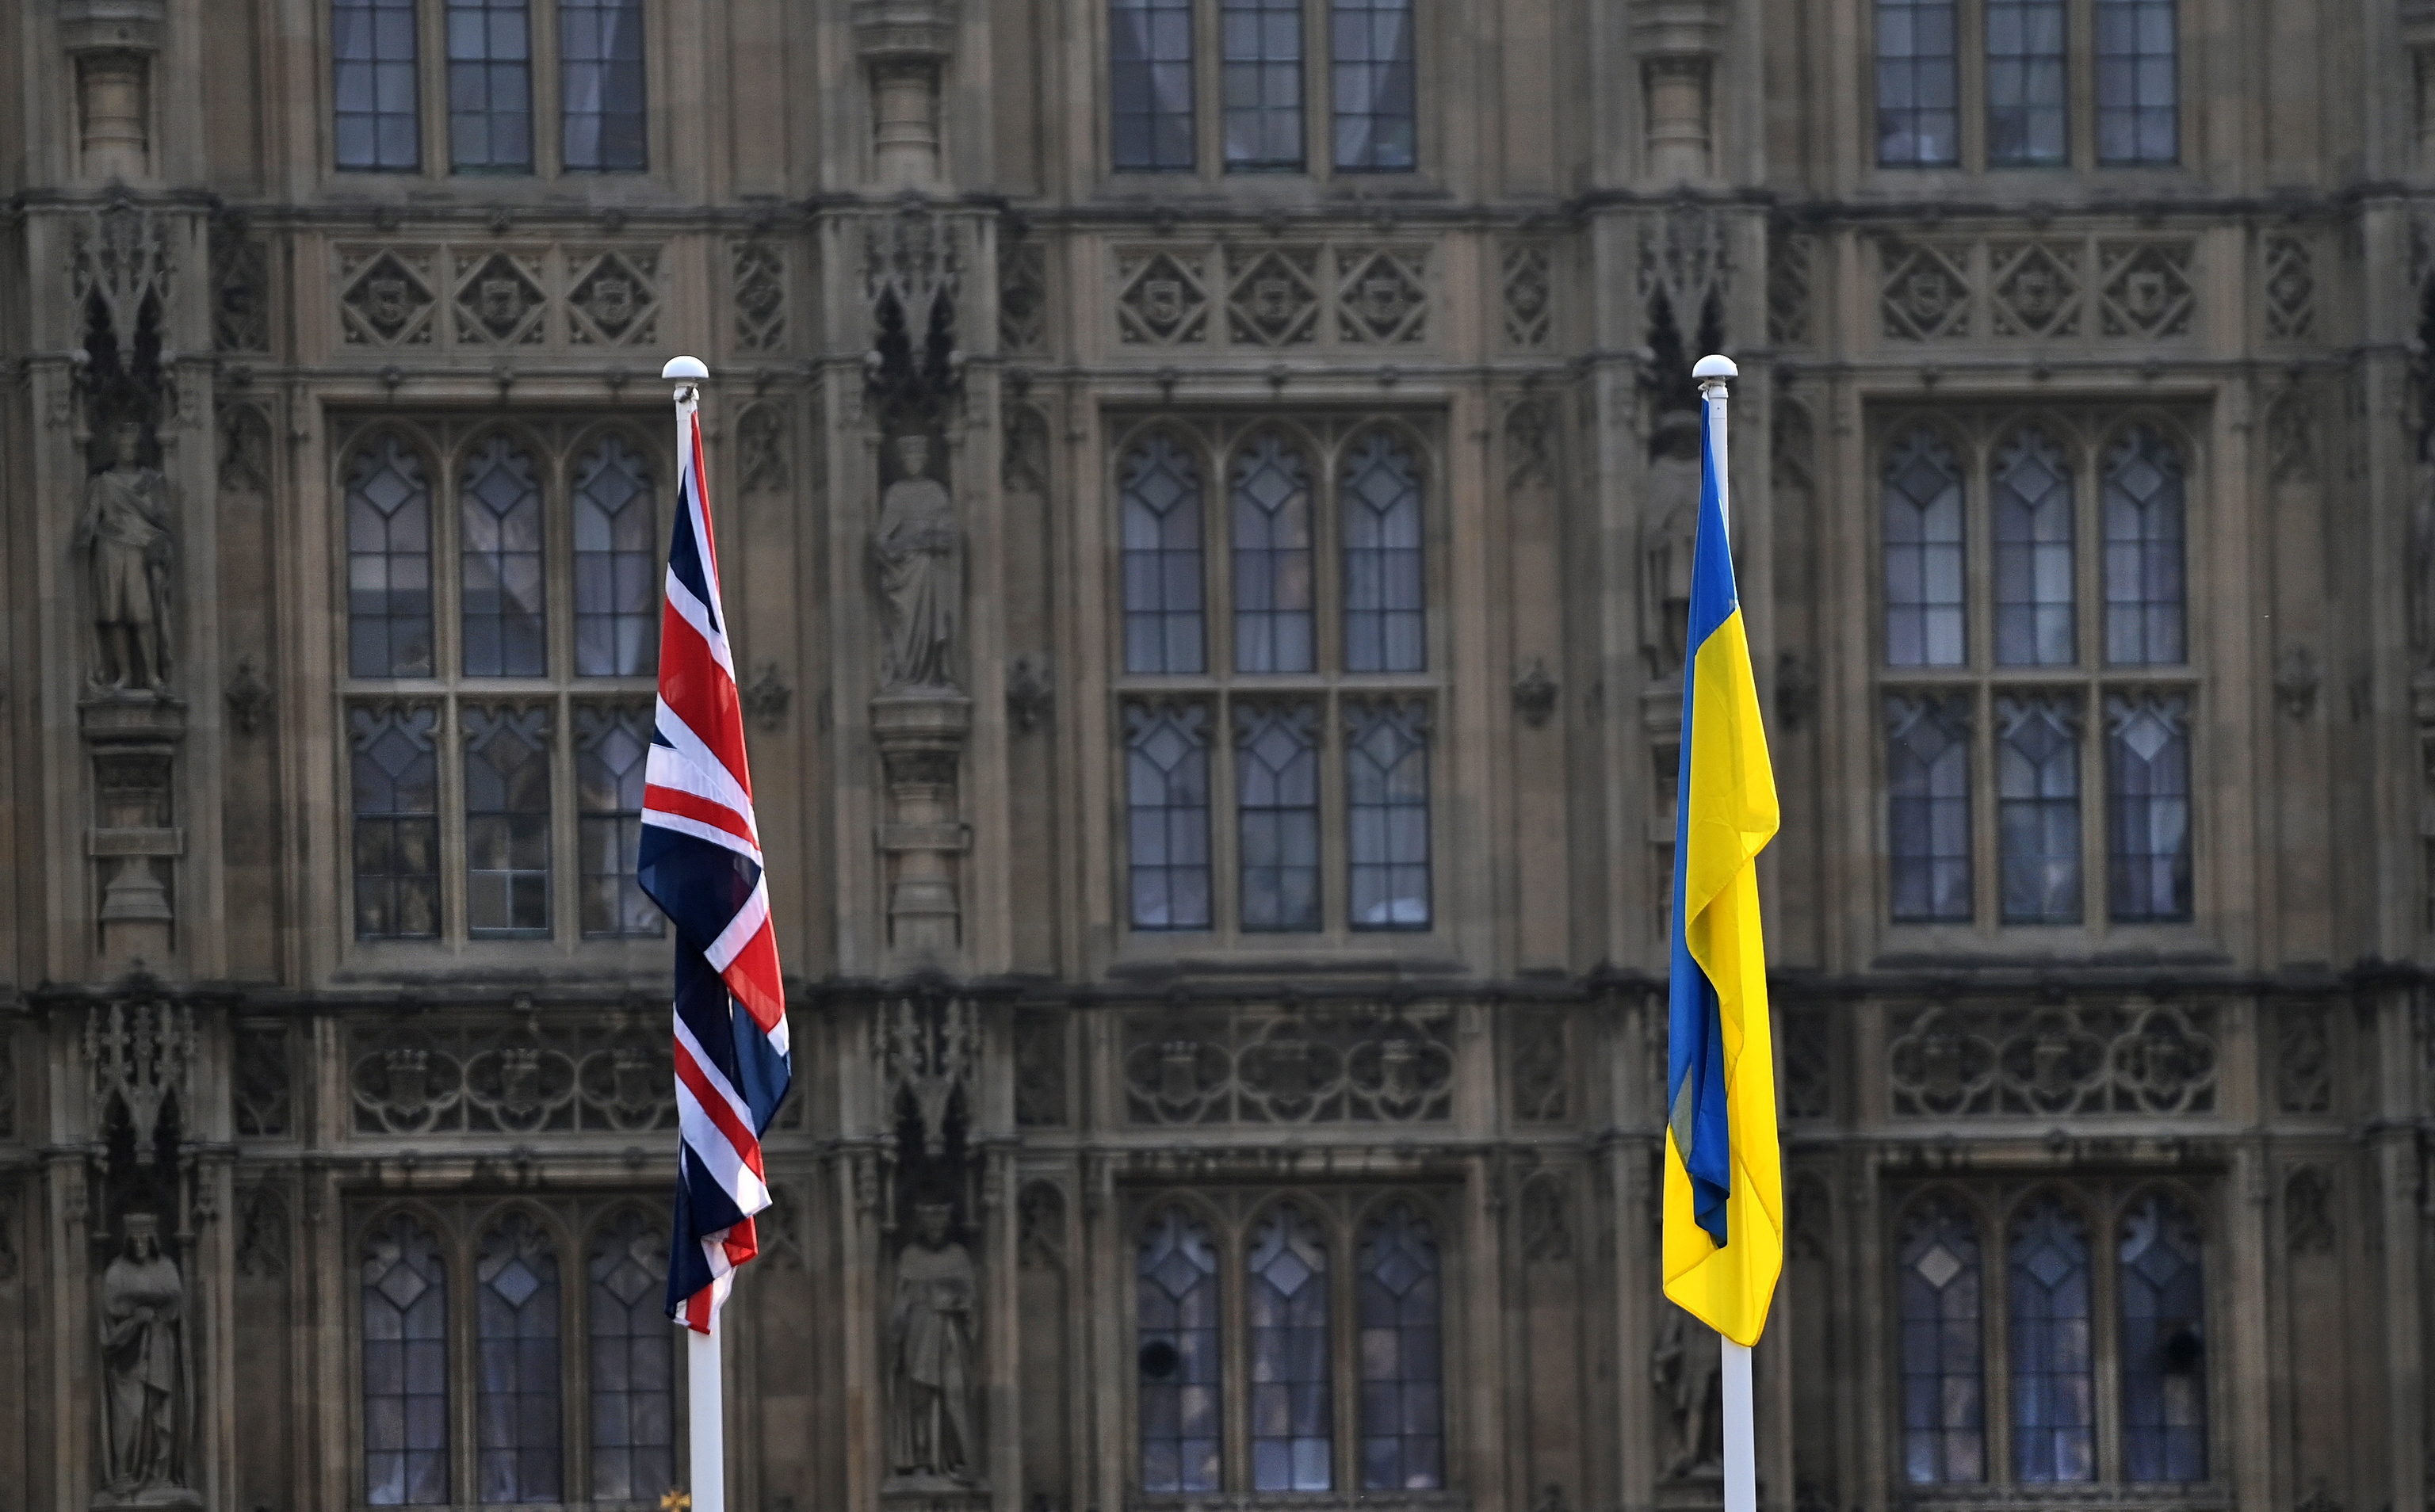 La bandera britnica y la ucraniana frente al Parlamento Britnico.